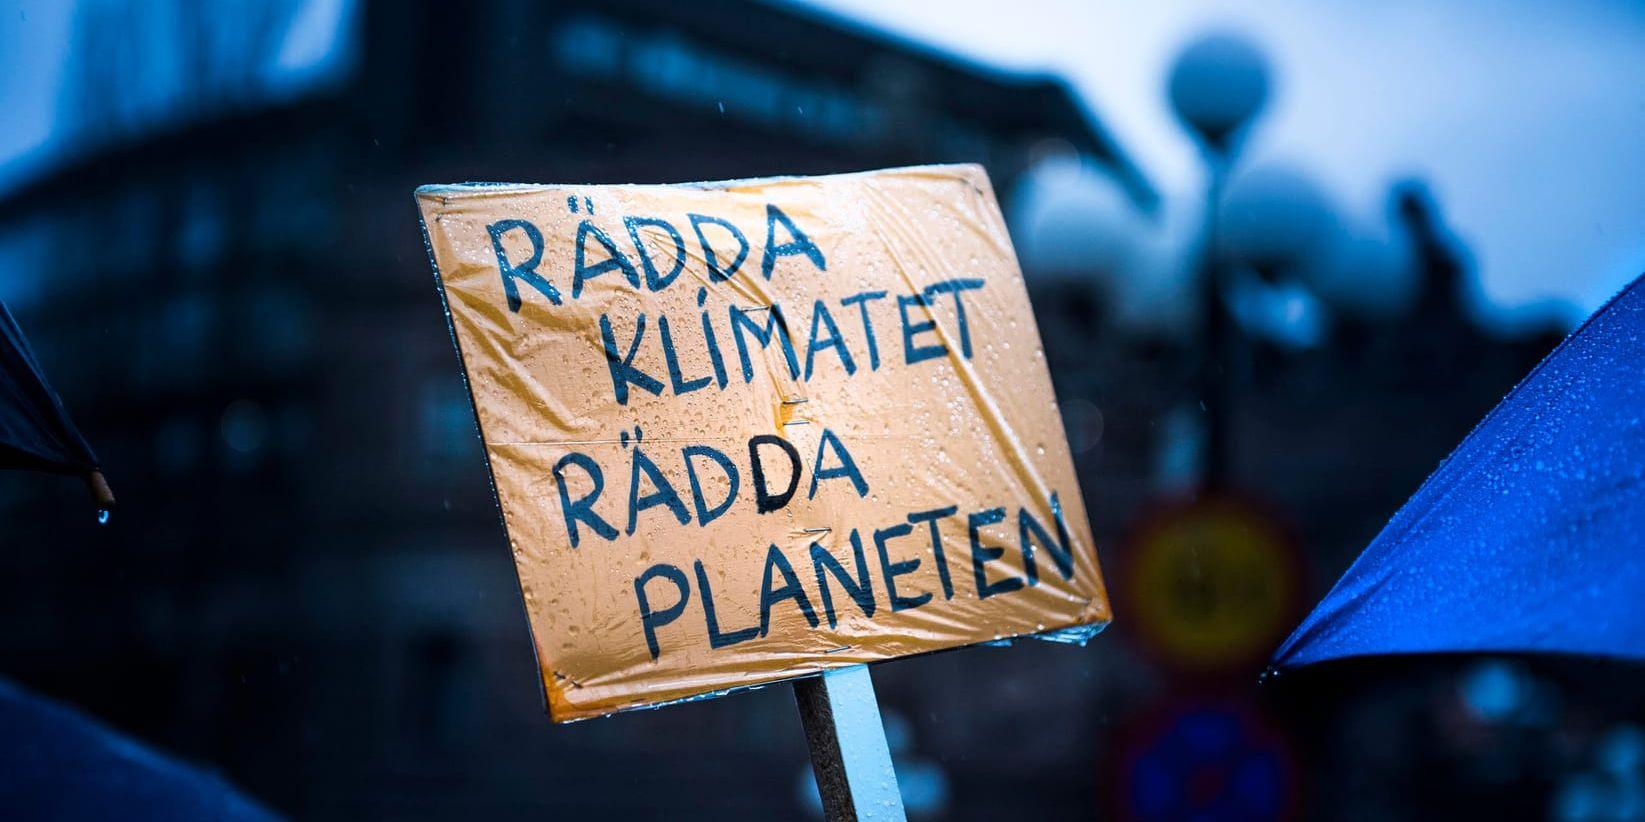 Under fredagen planerades manifestationer i över hundra svenska städer för uppmärksamhet kring klimatfrågan.